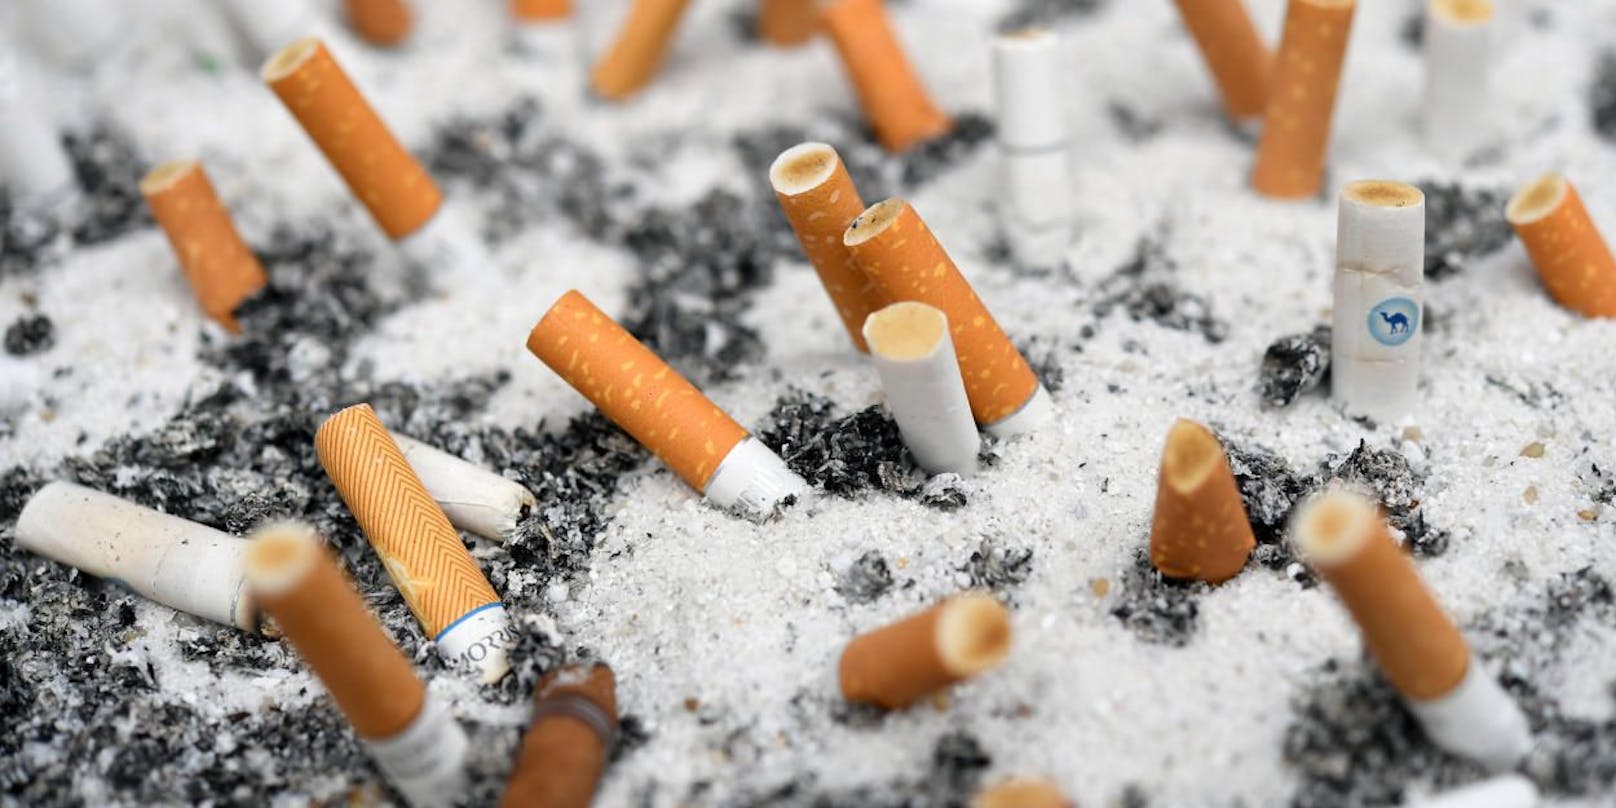 Ein Land darf sich als "rauchfrei" bezeichnen, sobald weniger als fünf Prozent der Bevölkerung rauchen.